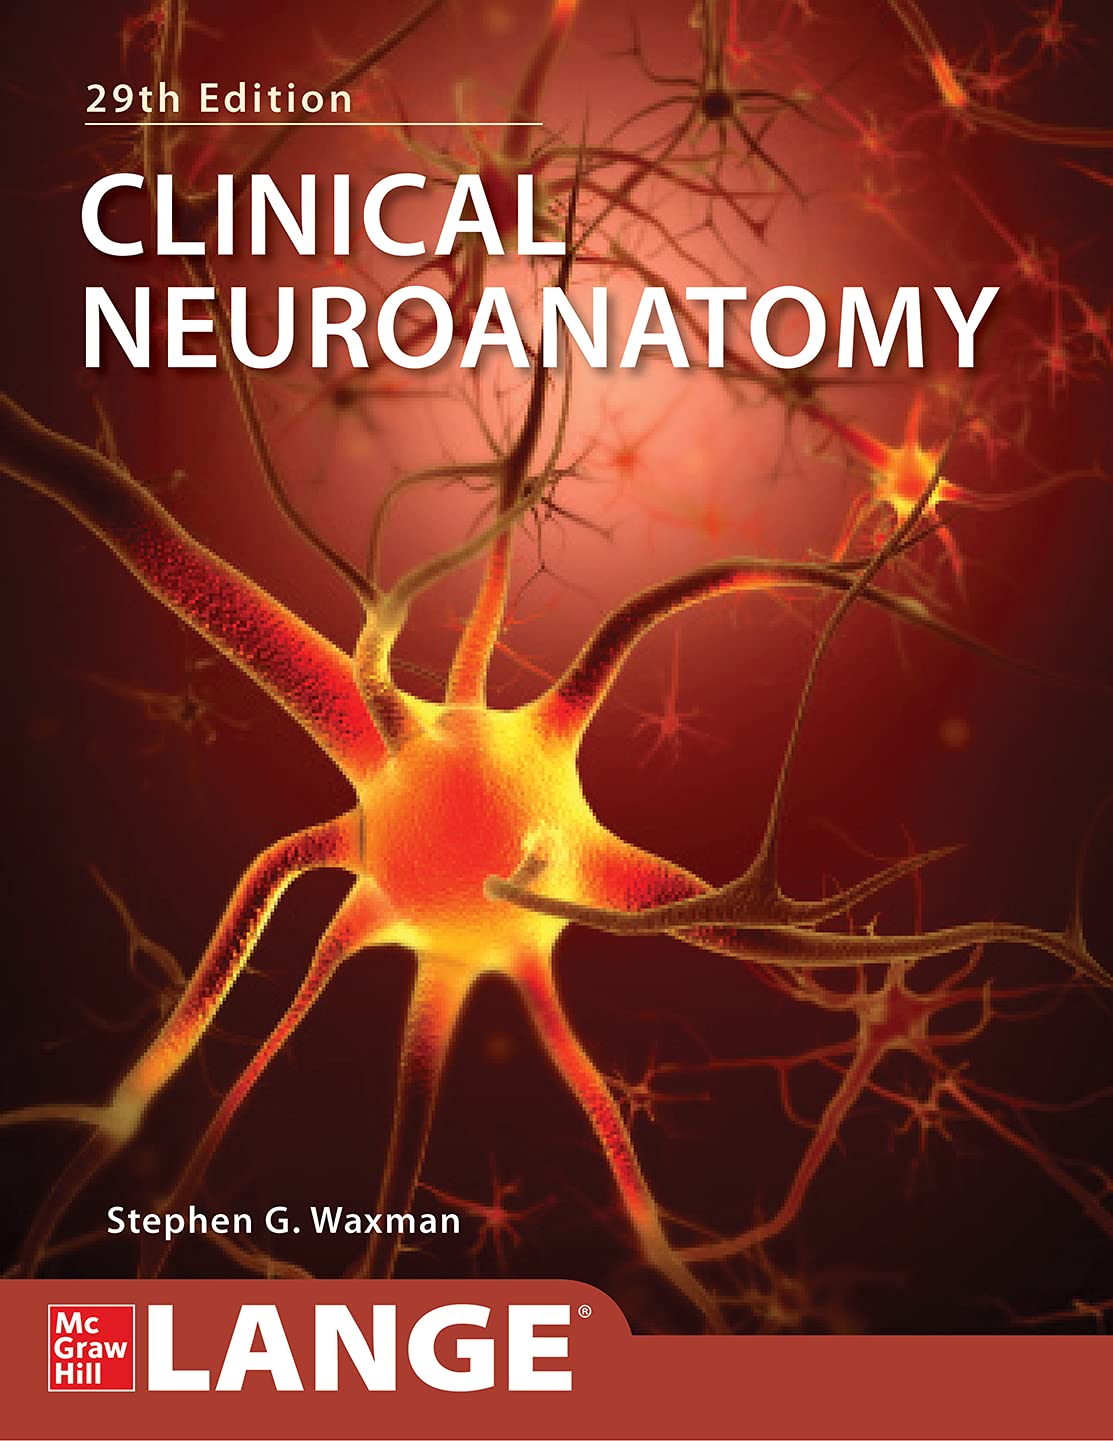 Clinical Neuroanatomy, 29th Edition  by Stephen Waxman 